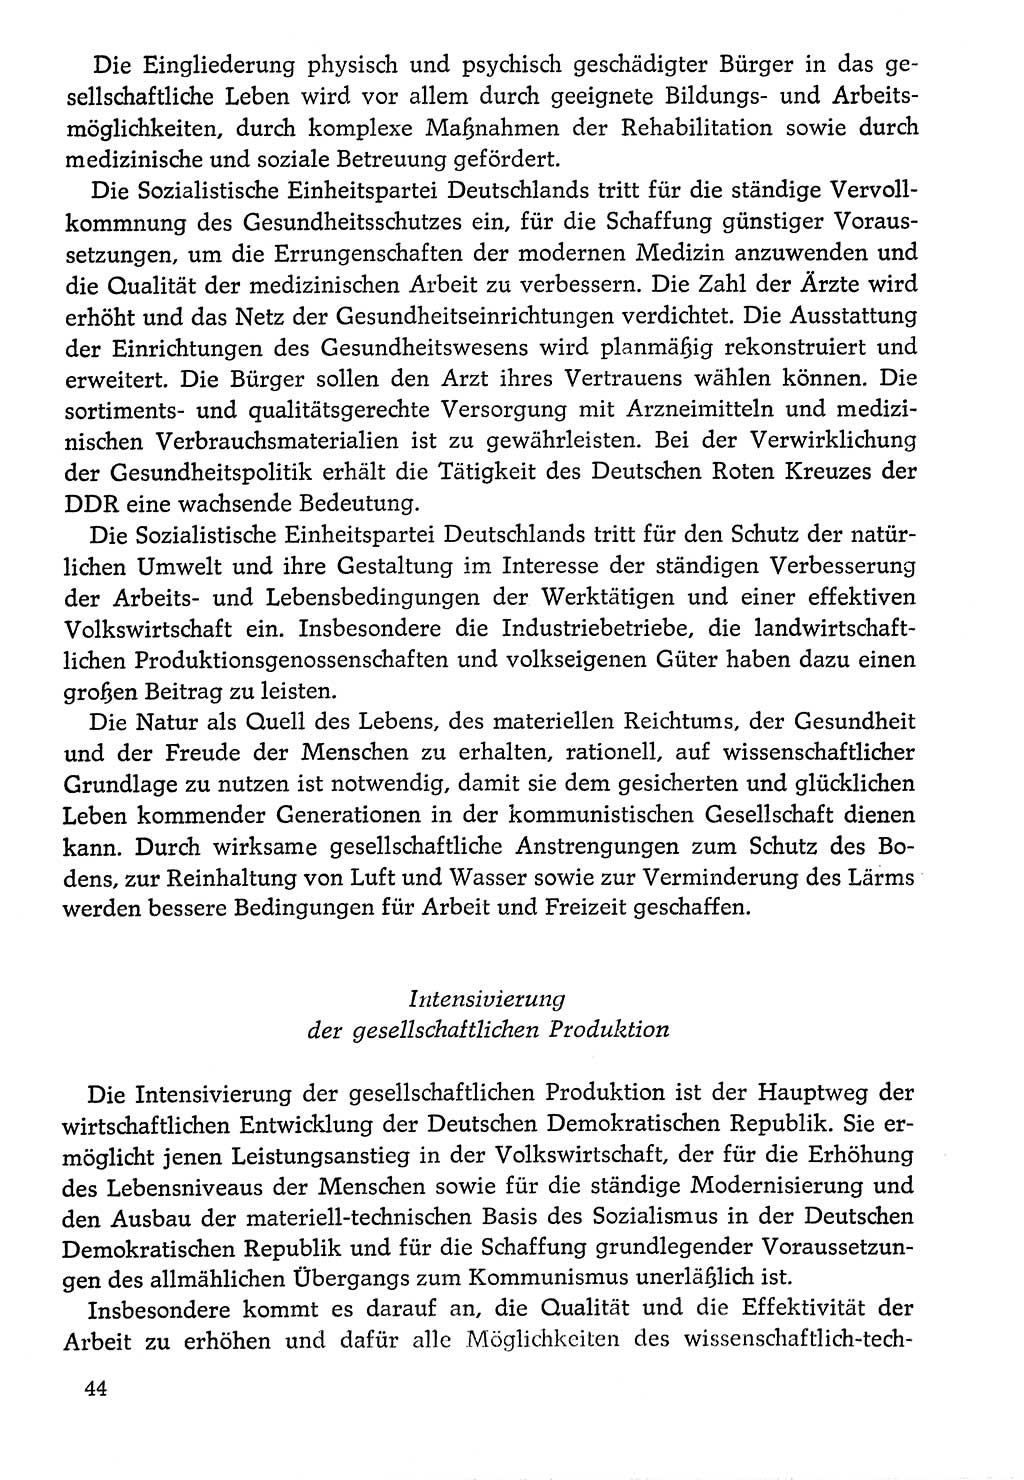 Dokumente der Sozialistischen Einheitspartei Deutschlands (SED) [Deutsche Demokratische Republik (DDR)] 1976-1977, Seite 44 (Dok. SED DDR 1976-1977, S. 44)